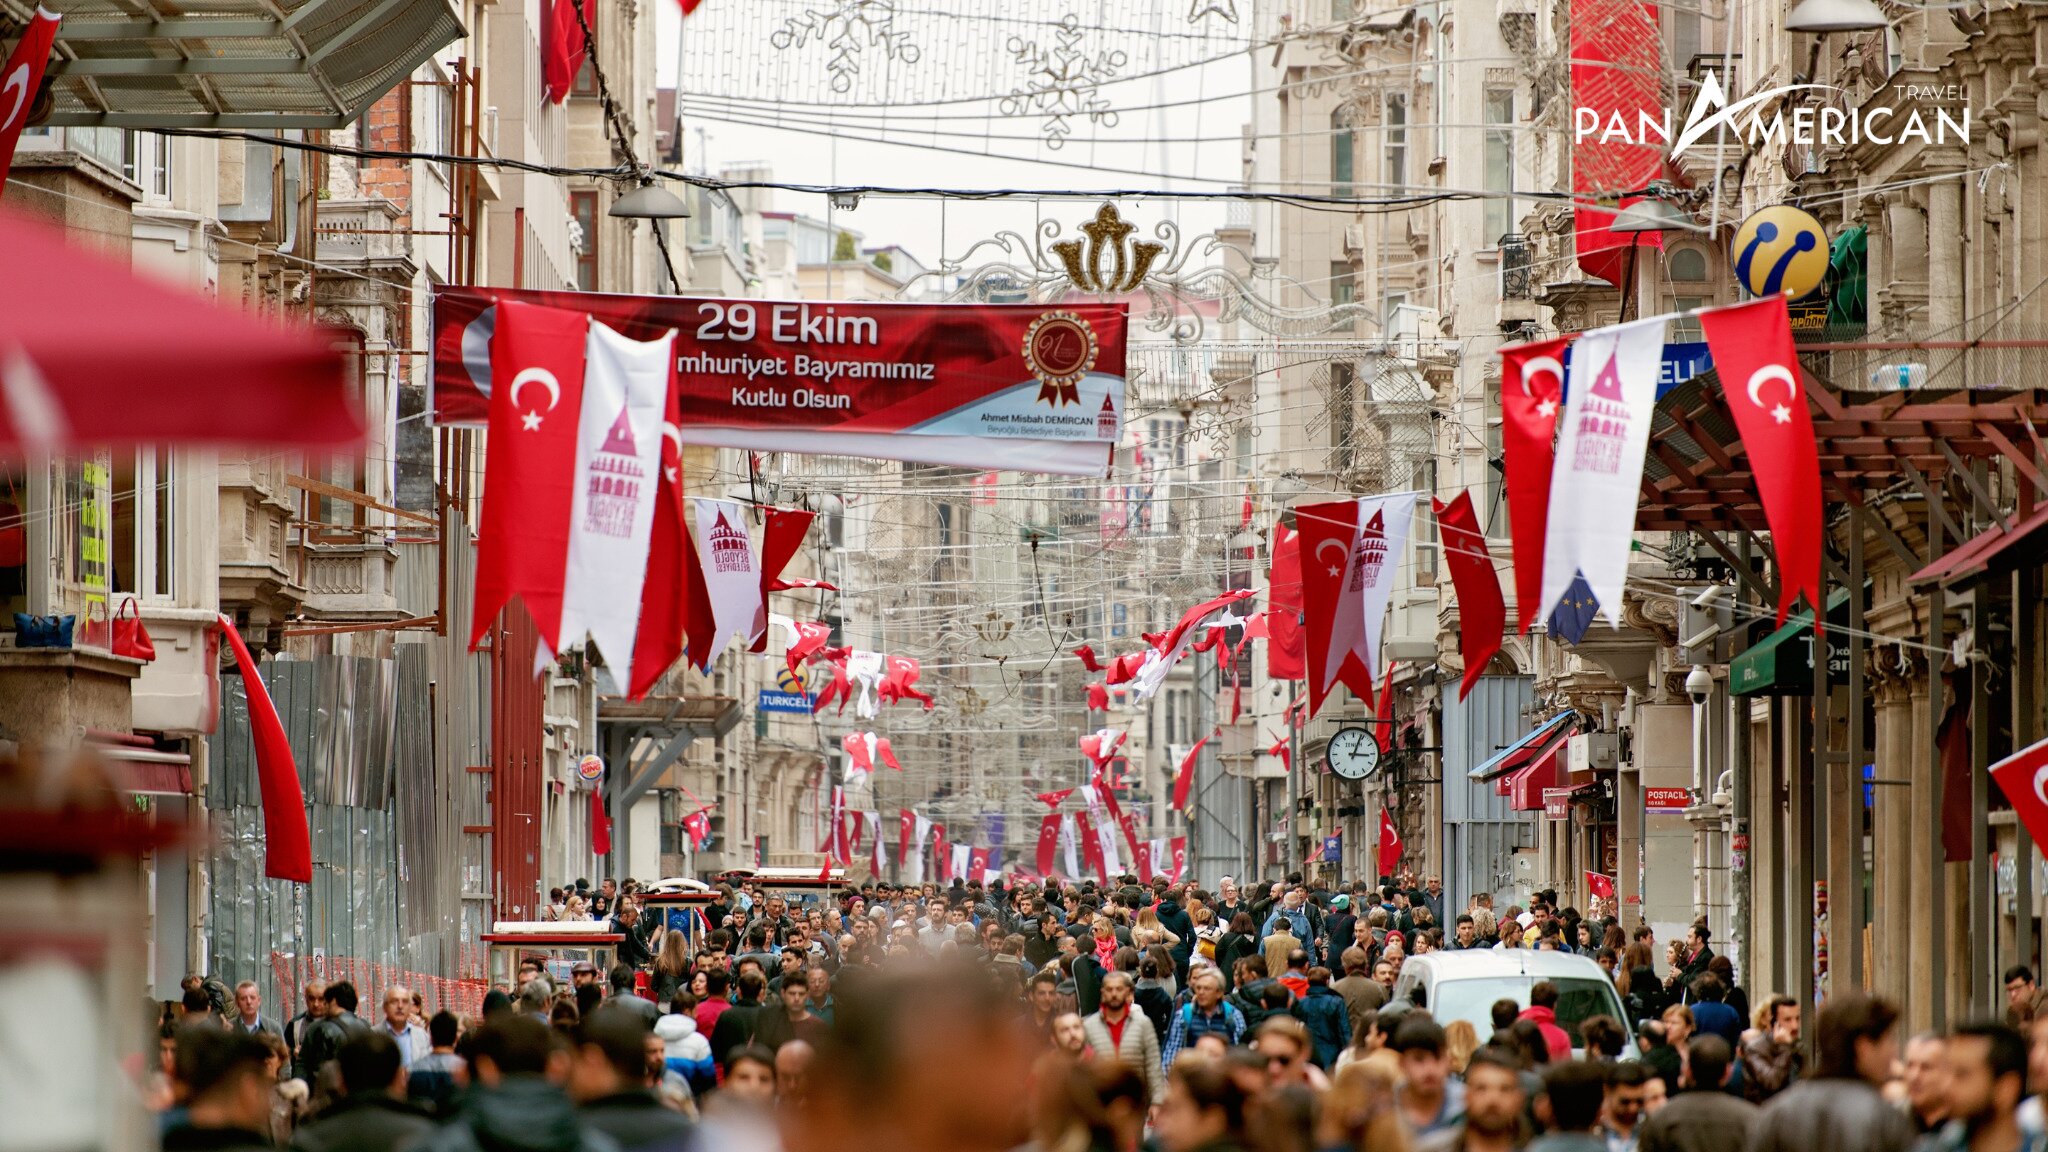 Sự đông đúc ở quảng trường Taksim